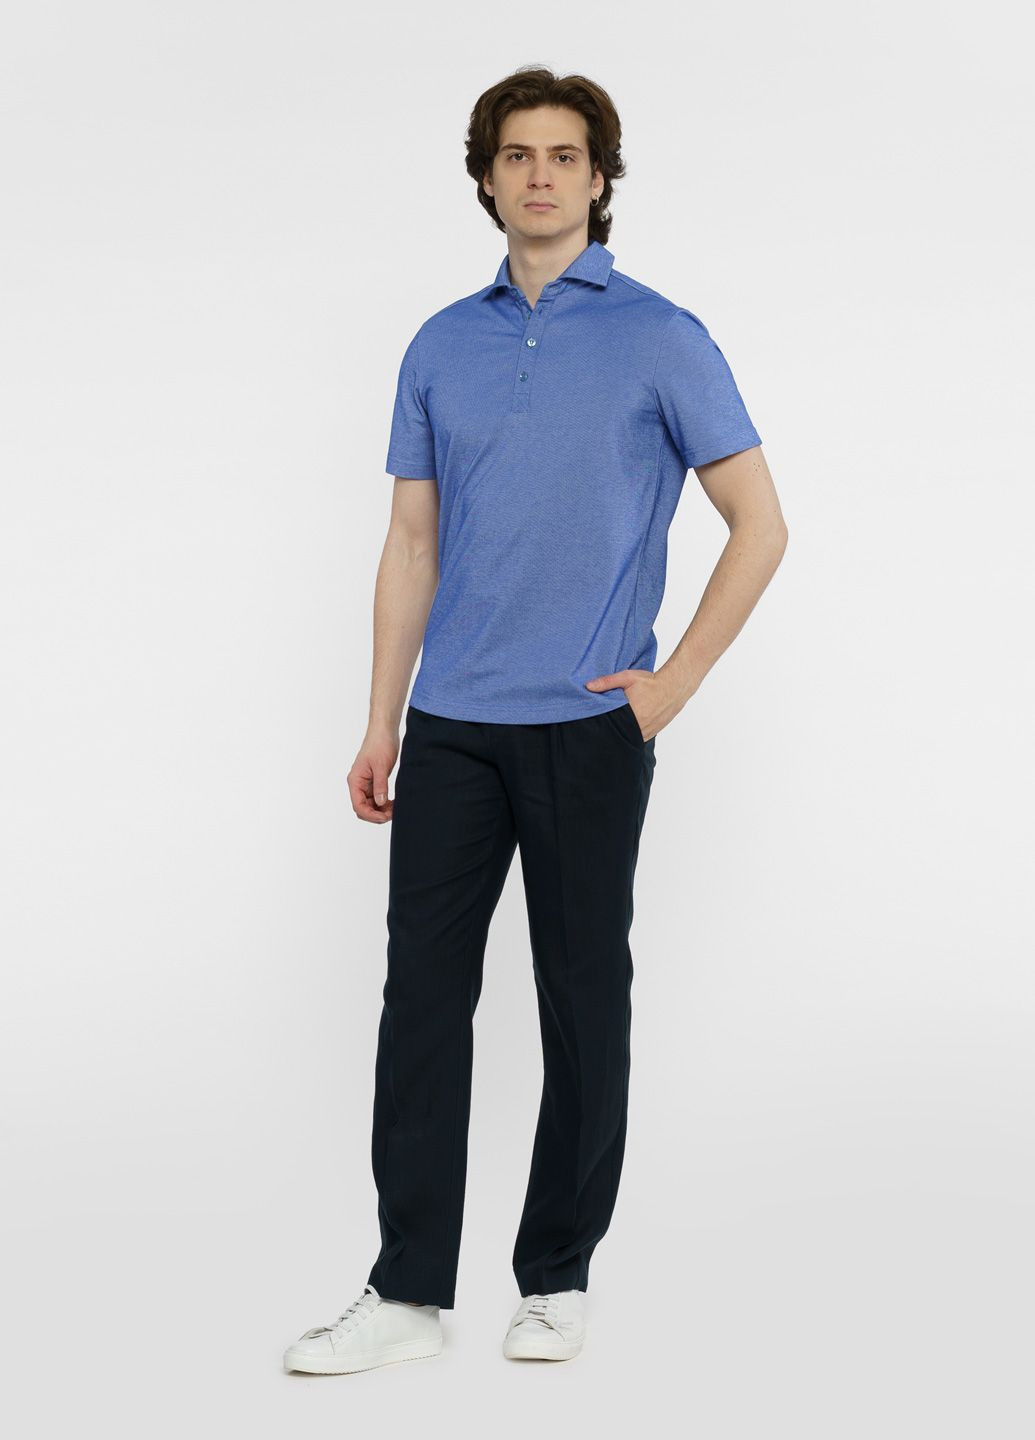 Синяя футболка-поло мужское синее для мужчин Arber однотонная